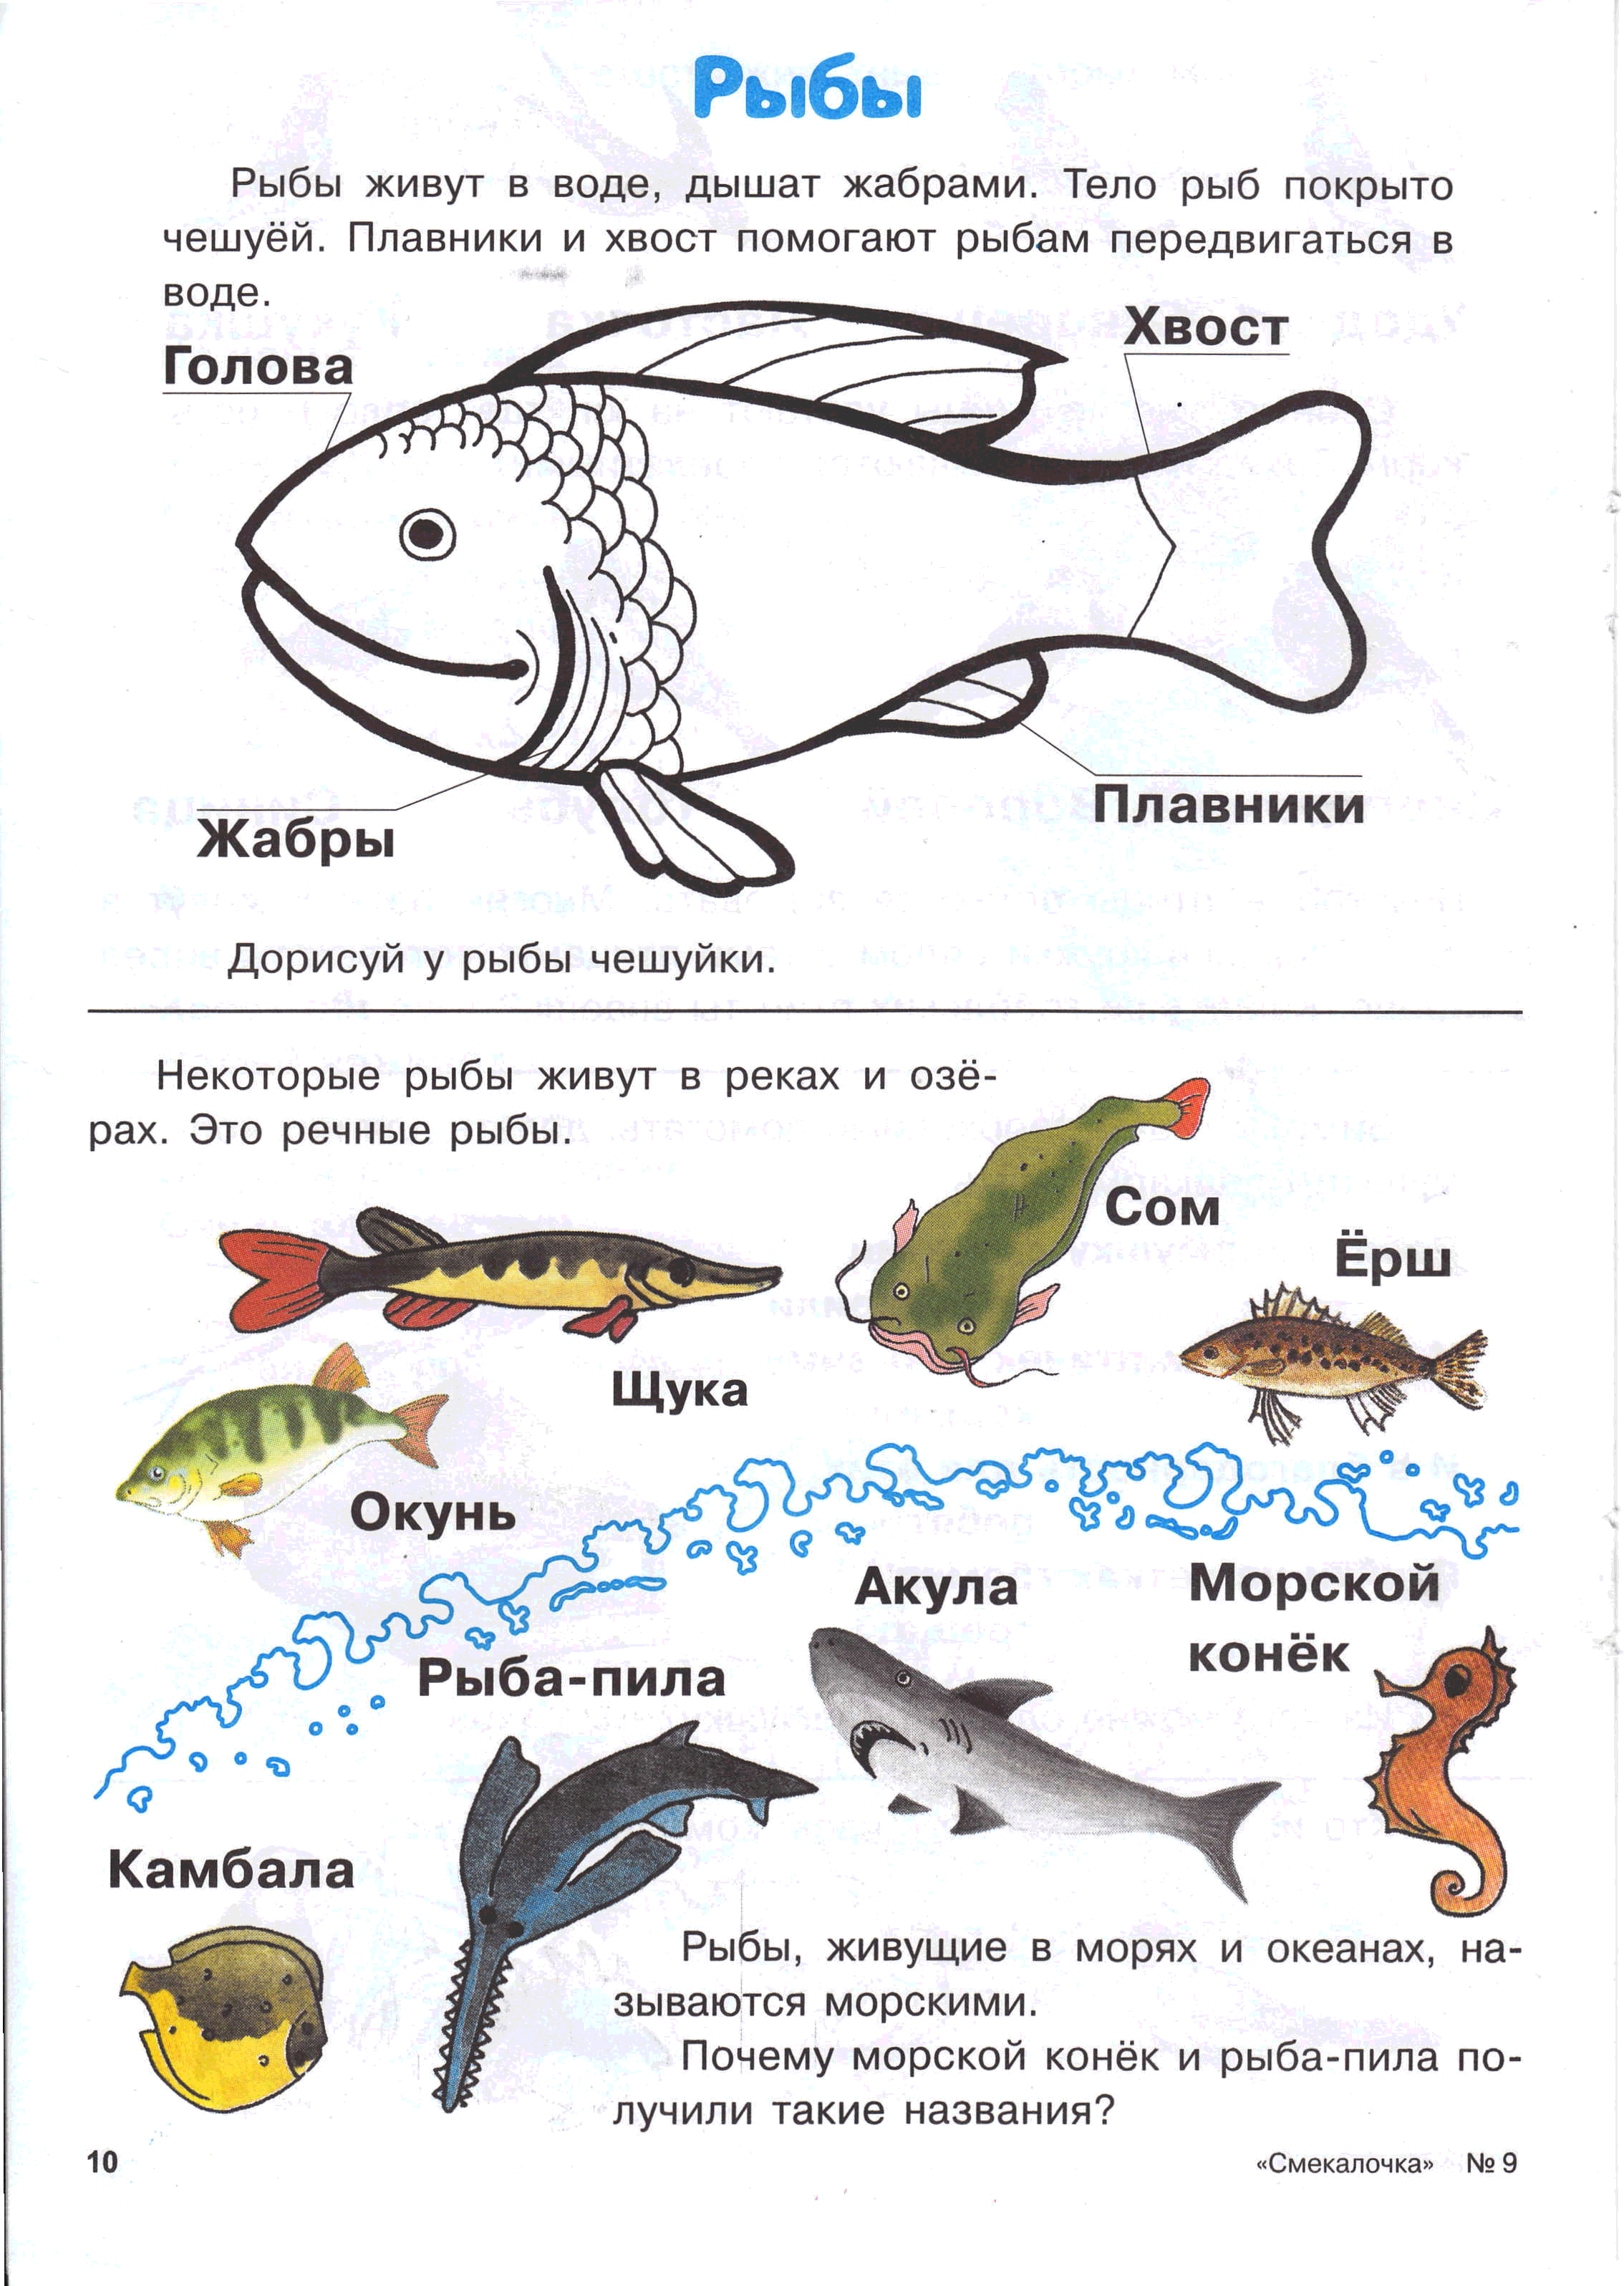 Тема аквариумные рыбки средняя группа. Логопедические задания по теме рыбы для дошкольников. Рыбы задание для дошкольников логопеда. Пресноводные и аквариумные рыбы задания для детей. Пресноводные рыбы задания для дошкольников.